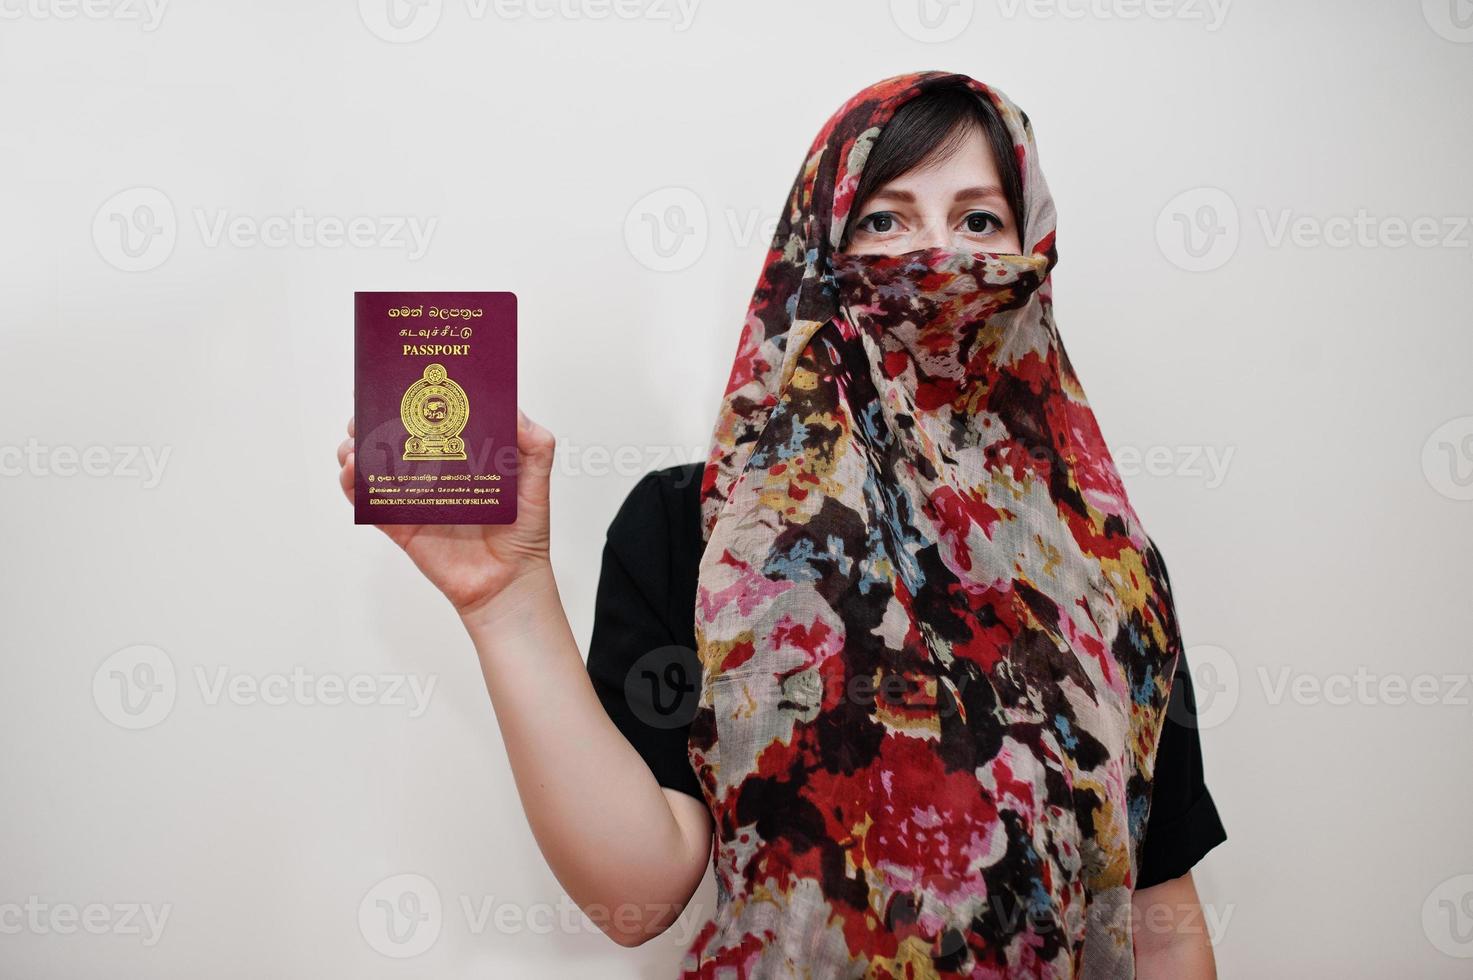 joven musulmana árabe vestida con hijab tiene pasaporte de la república socialista democrática de sri lanka sobre fondo de pared blanca, retrato de estudio. foto